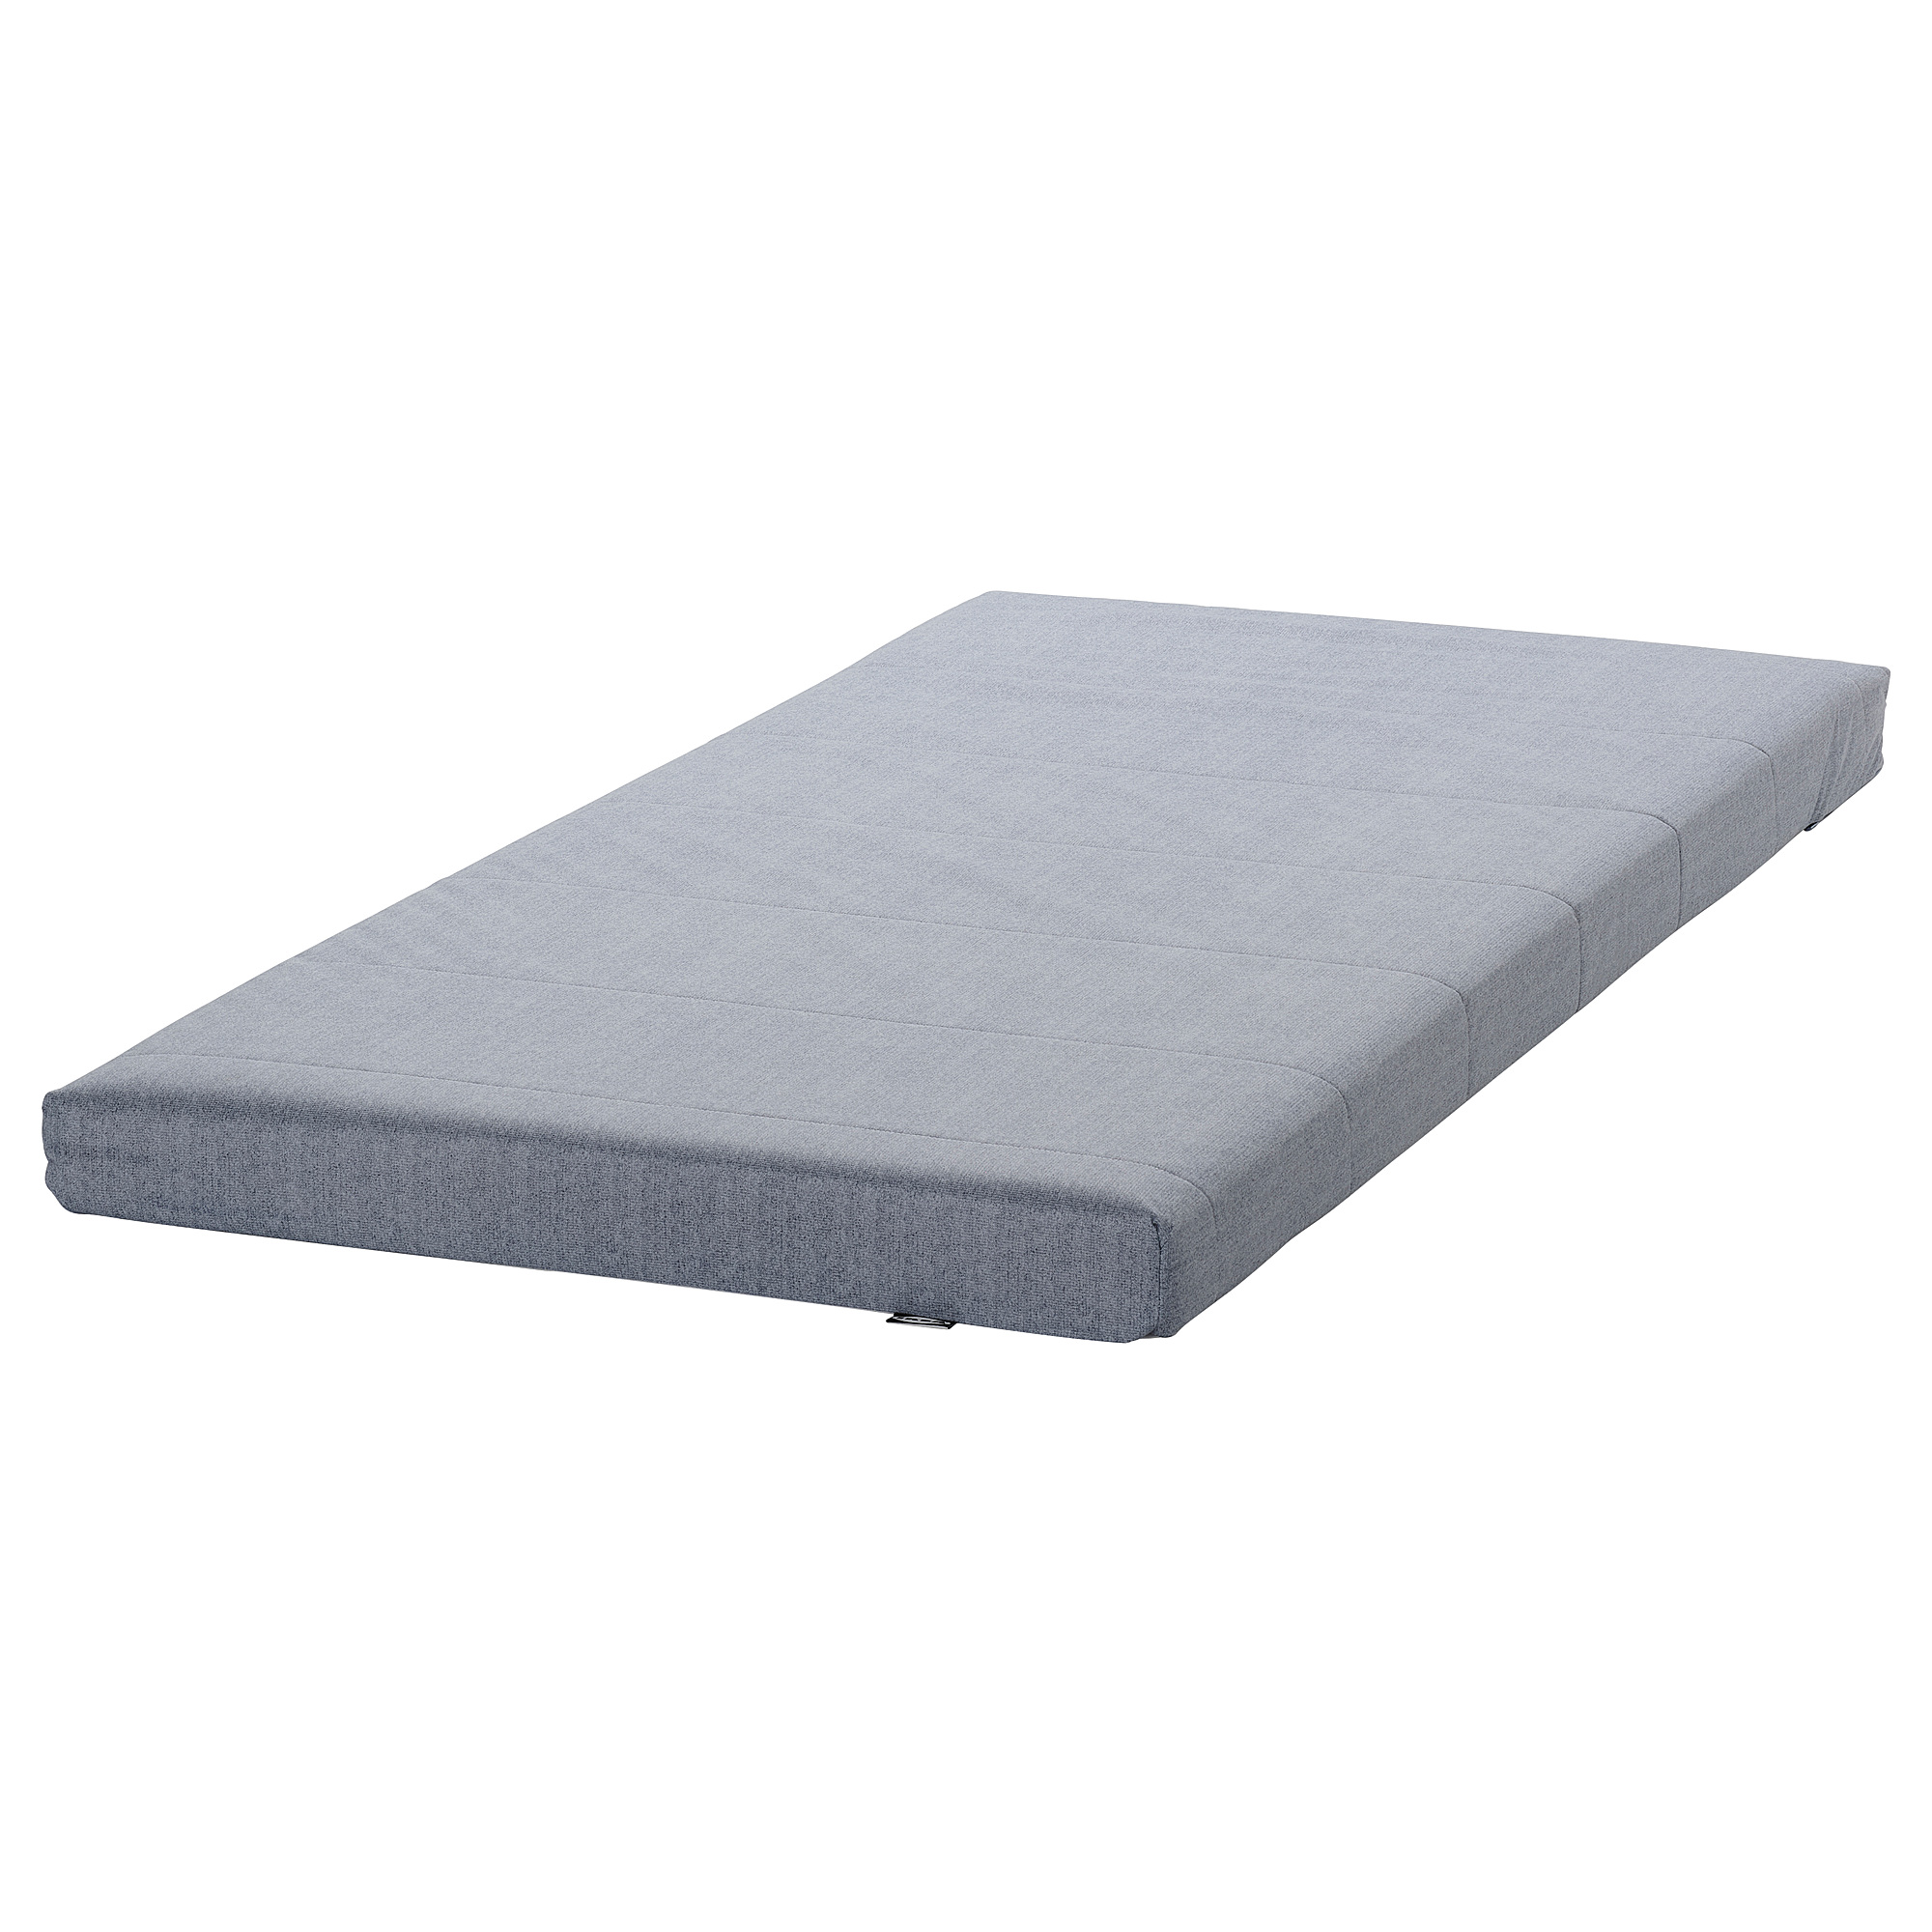 ÅGOTNES foam mattress